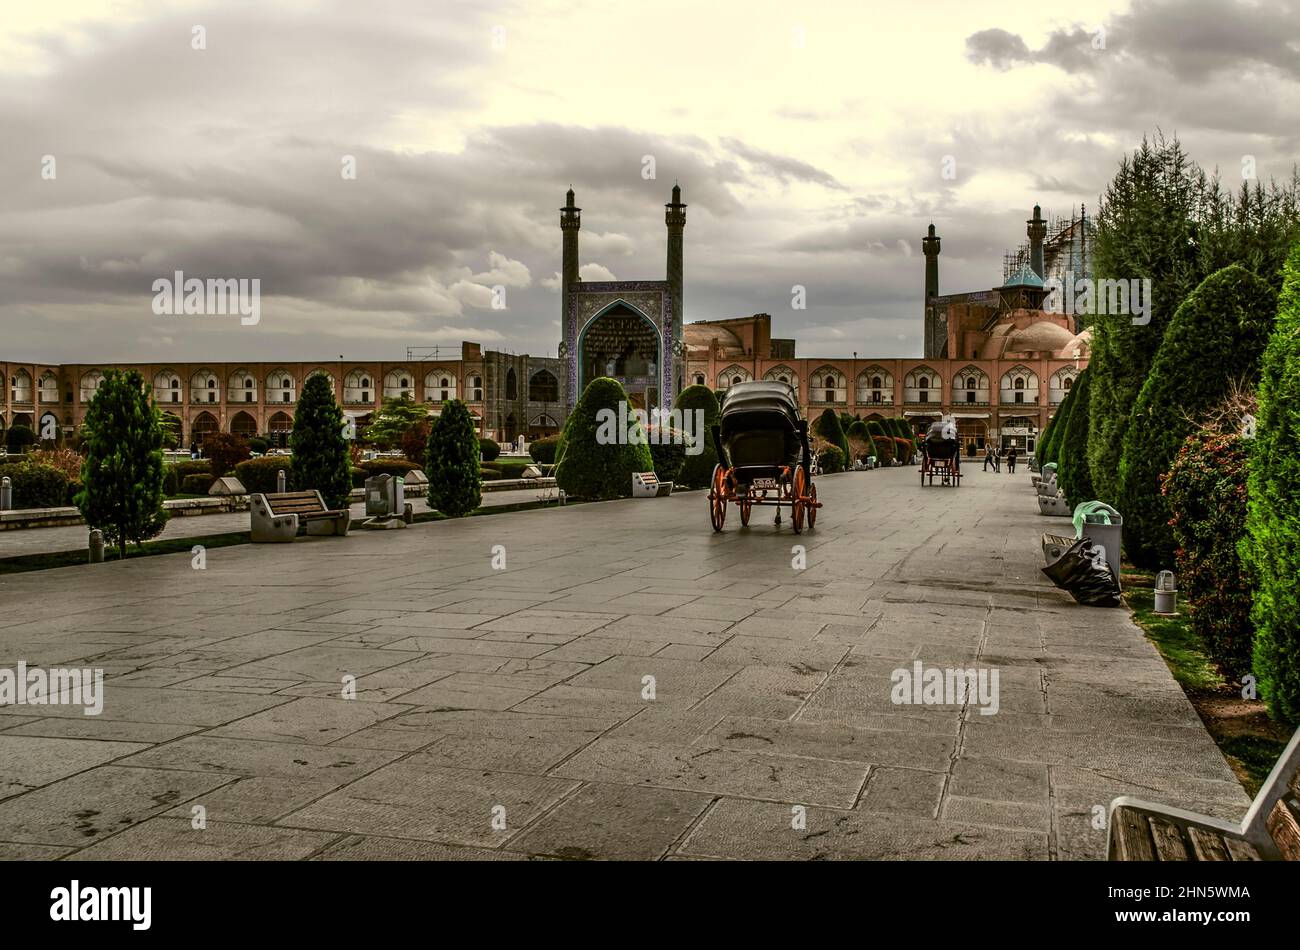 Isfahan, Iran, 17 novembre 2021 : la deuxième plus grande place Naqsh e Jahan au monde avec un parc et une vue sur la plus haute mosquée Sheikh Imam de la ville Banque D'Images